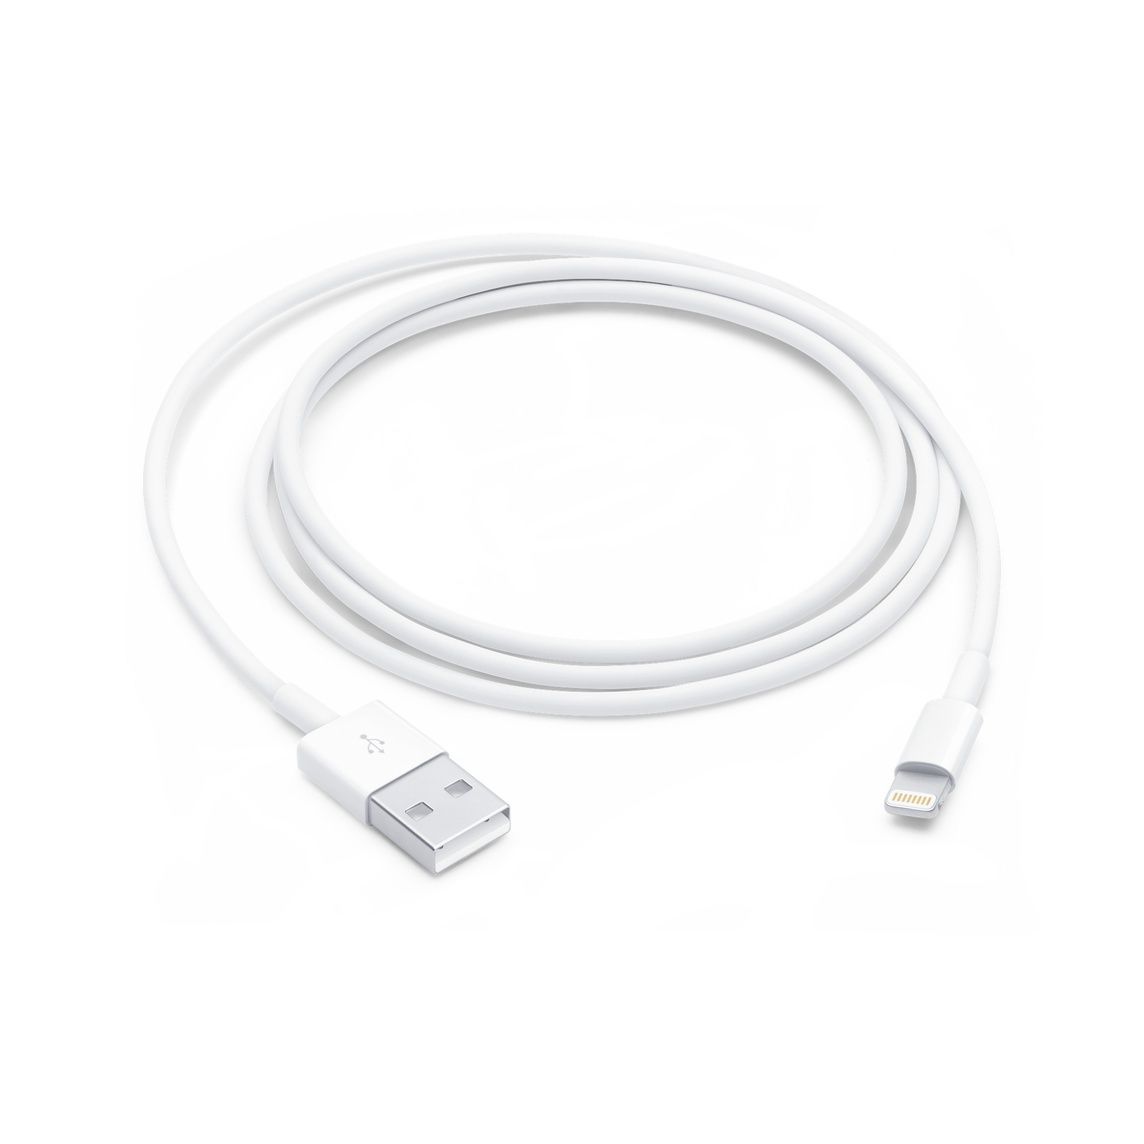 Новый кабель Iphone (Айфон) lighting на USB 9000